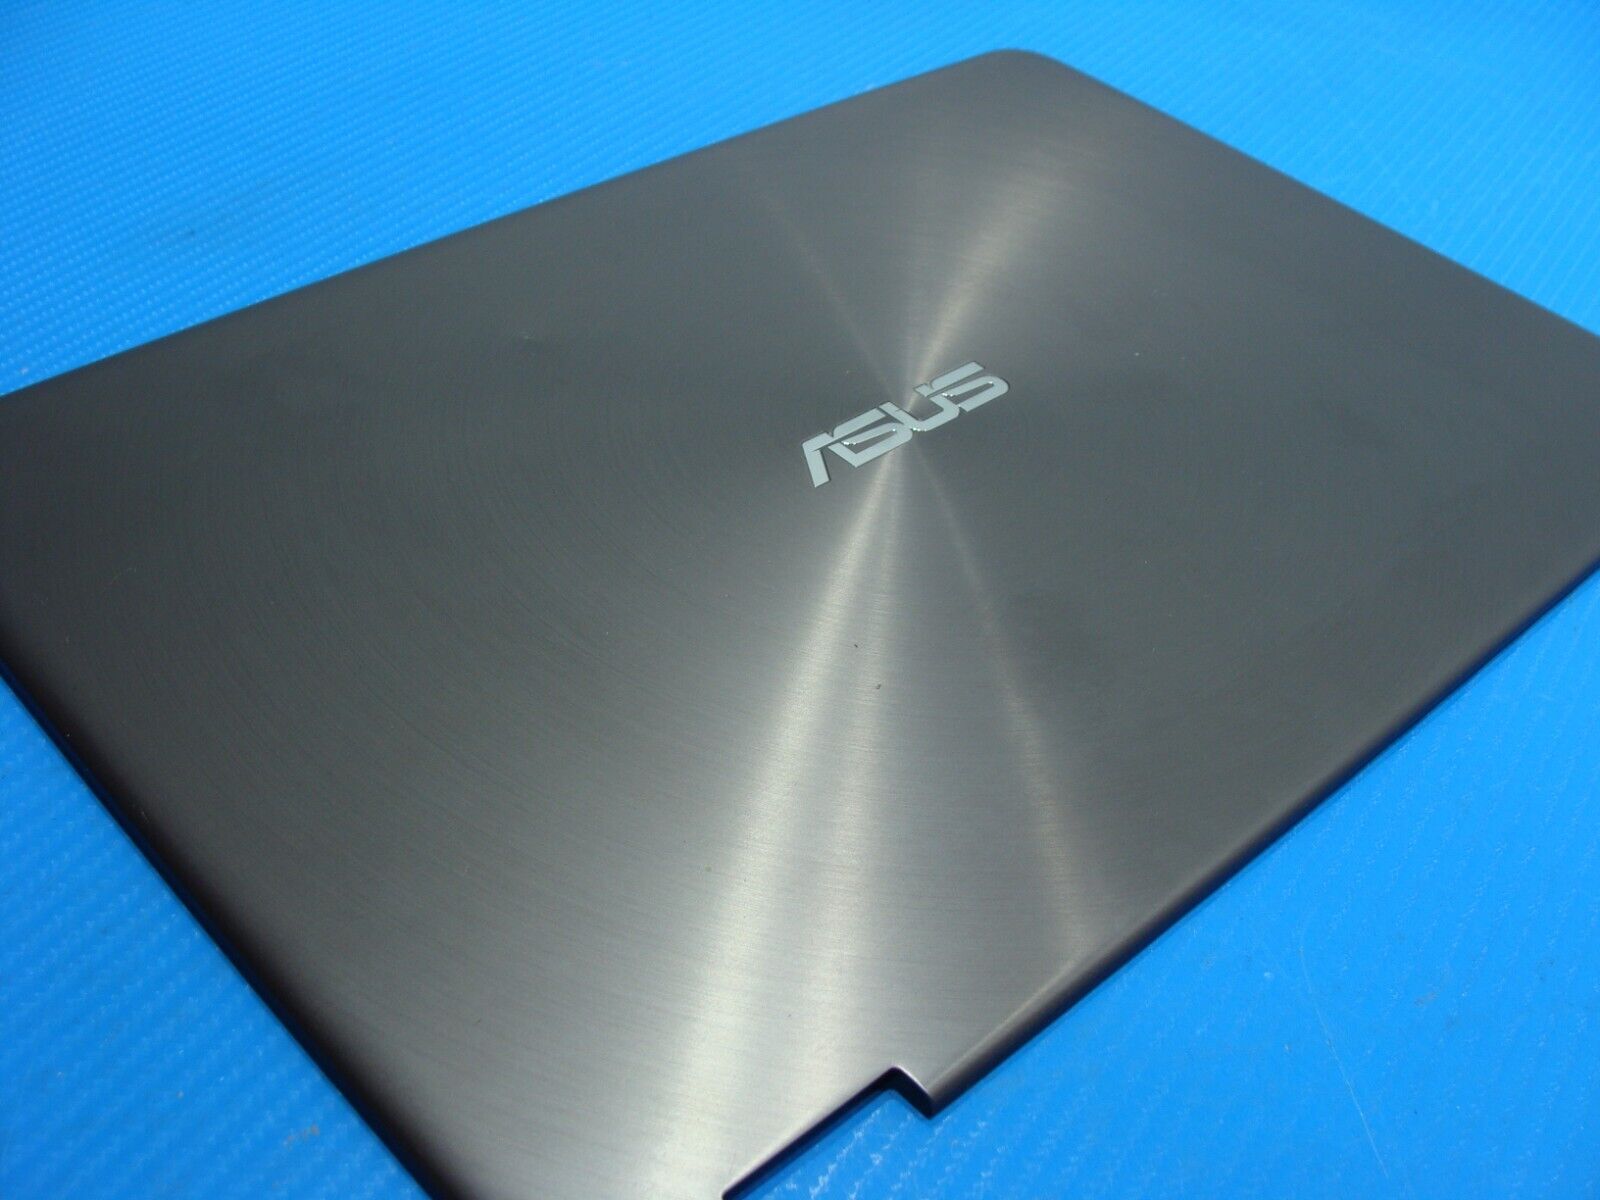 Asus ZenBook 13.3